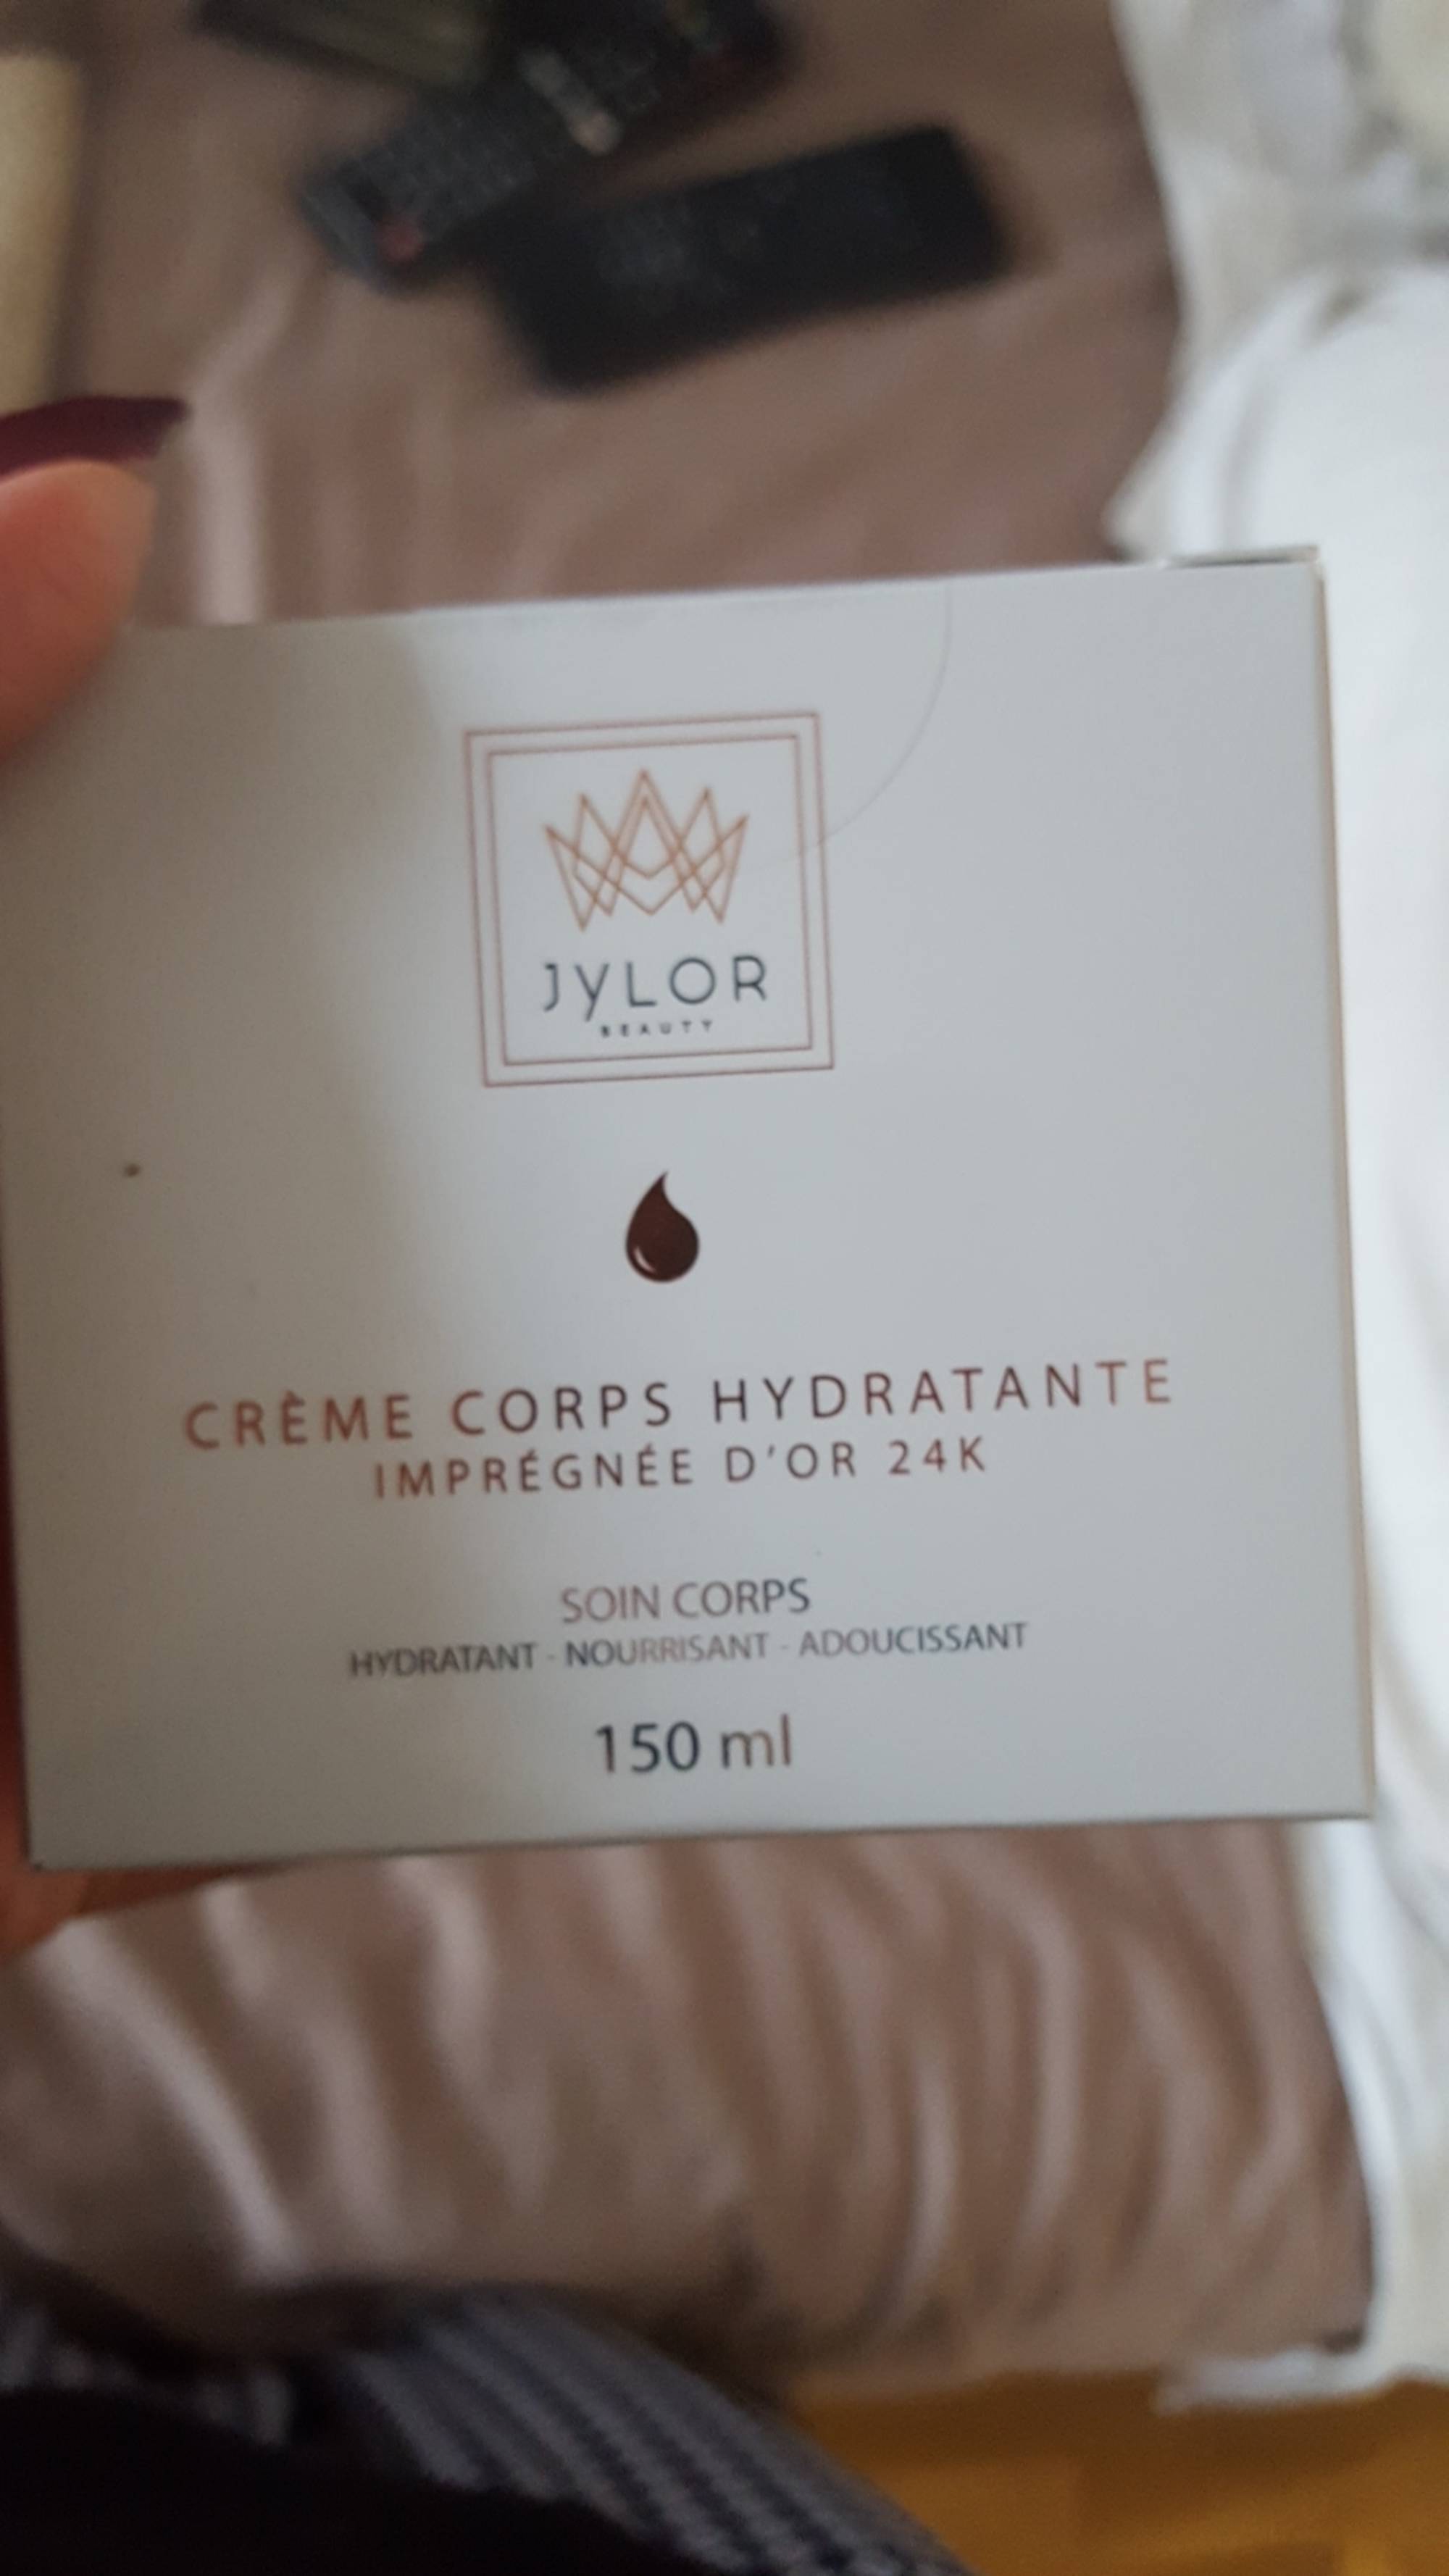 JYLOR - Crème corps hydratante imprégnée d'or 24K